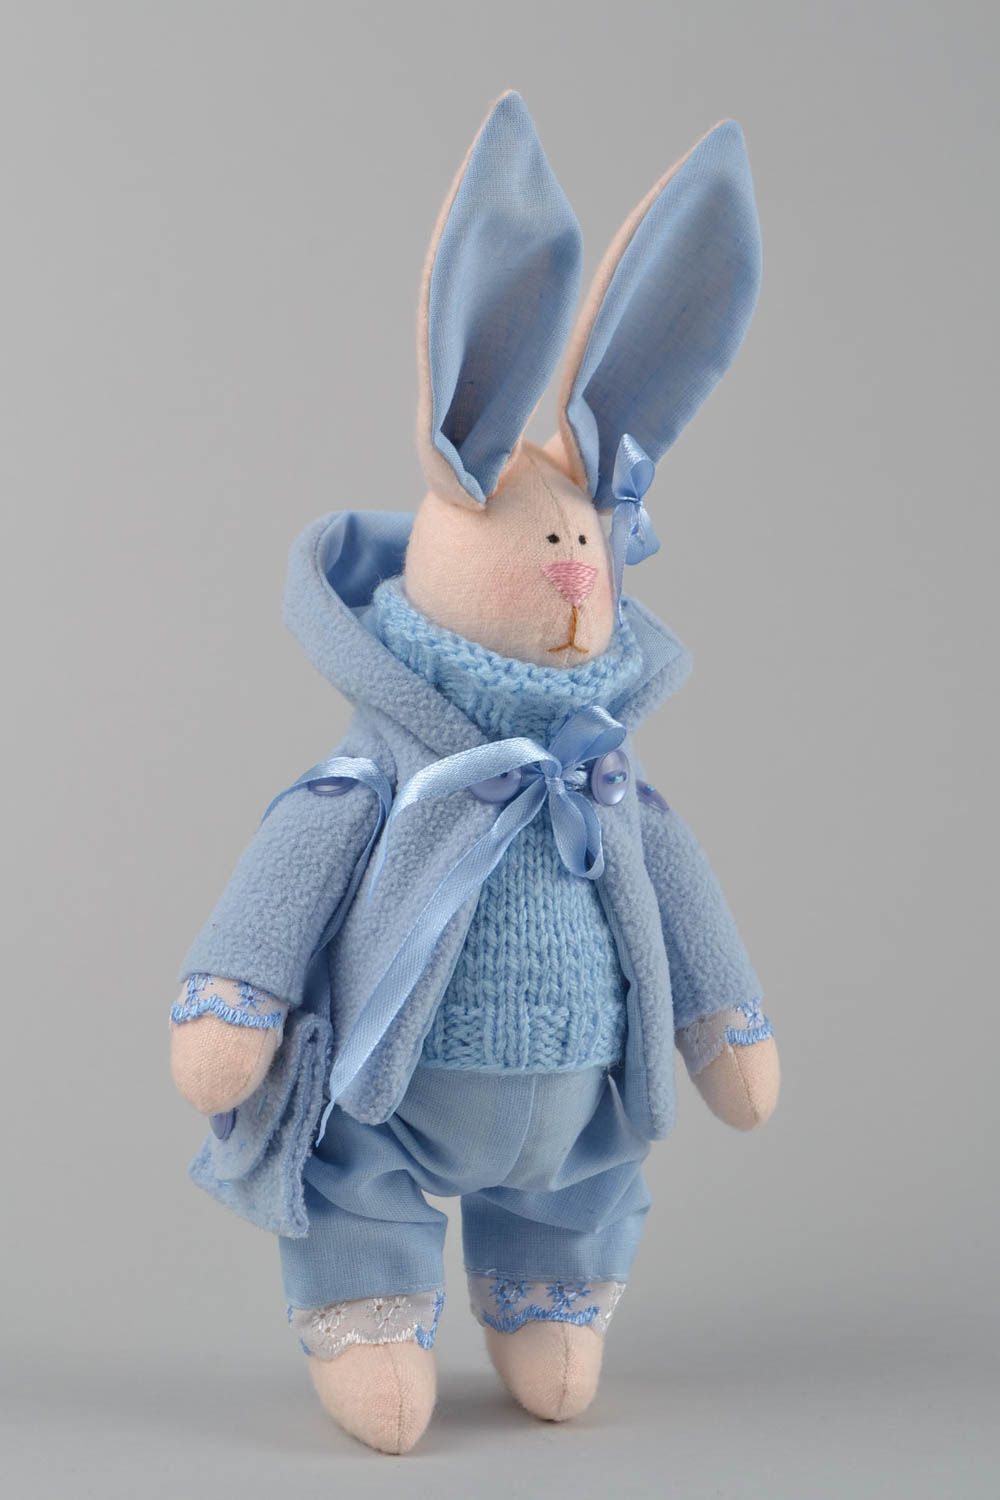 Textil Kuscheltier Hase im blauen Anzug handmade Schmuck für Haus Dekor  foto 3